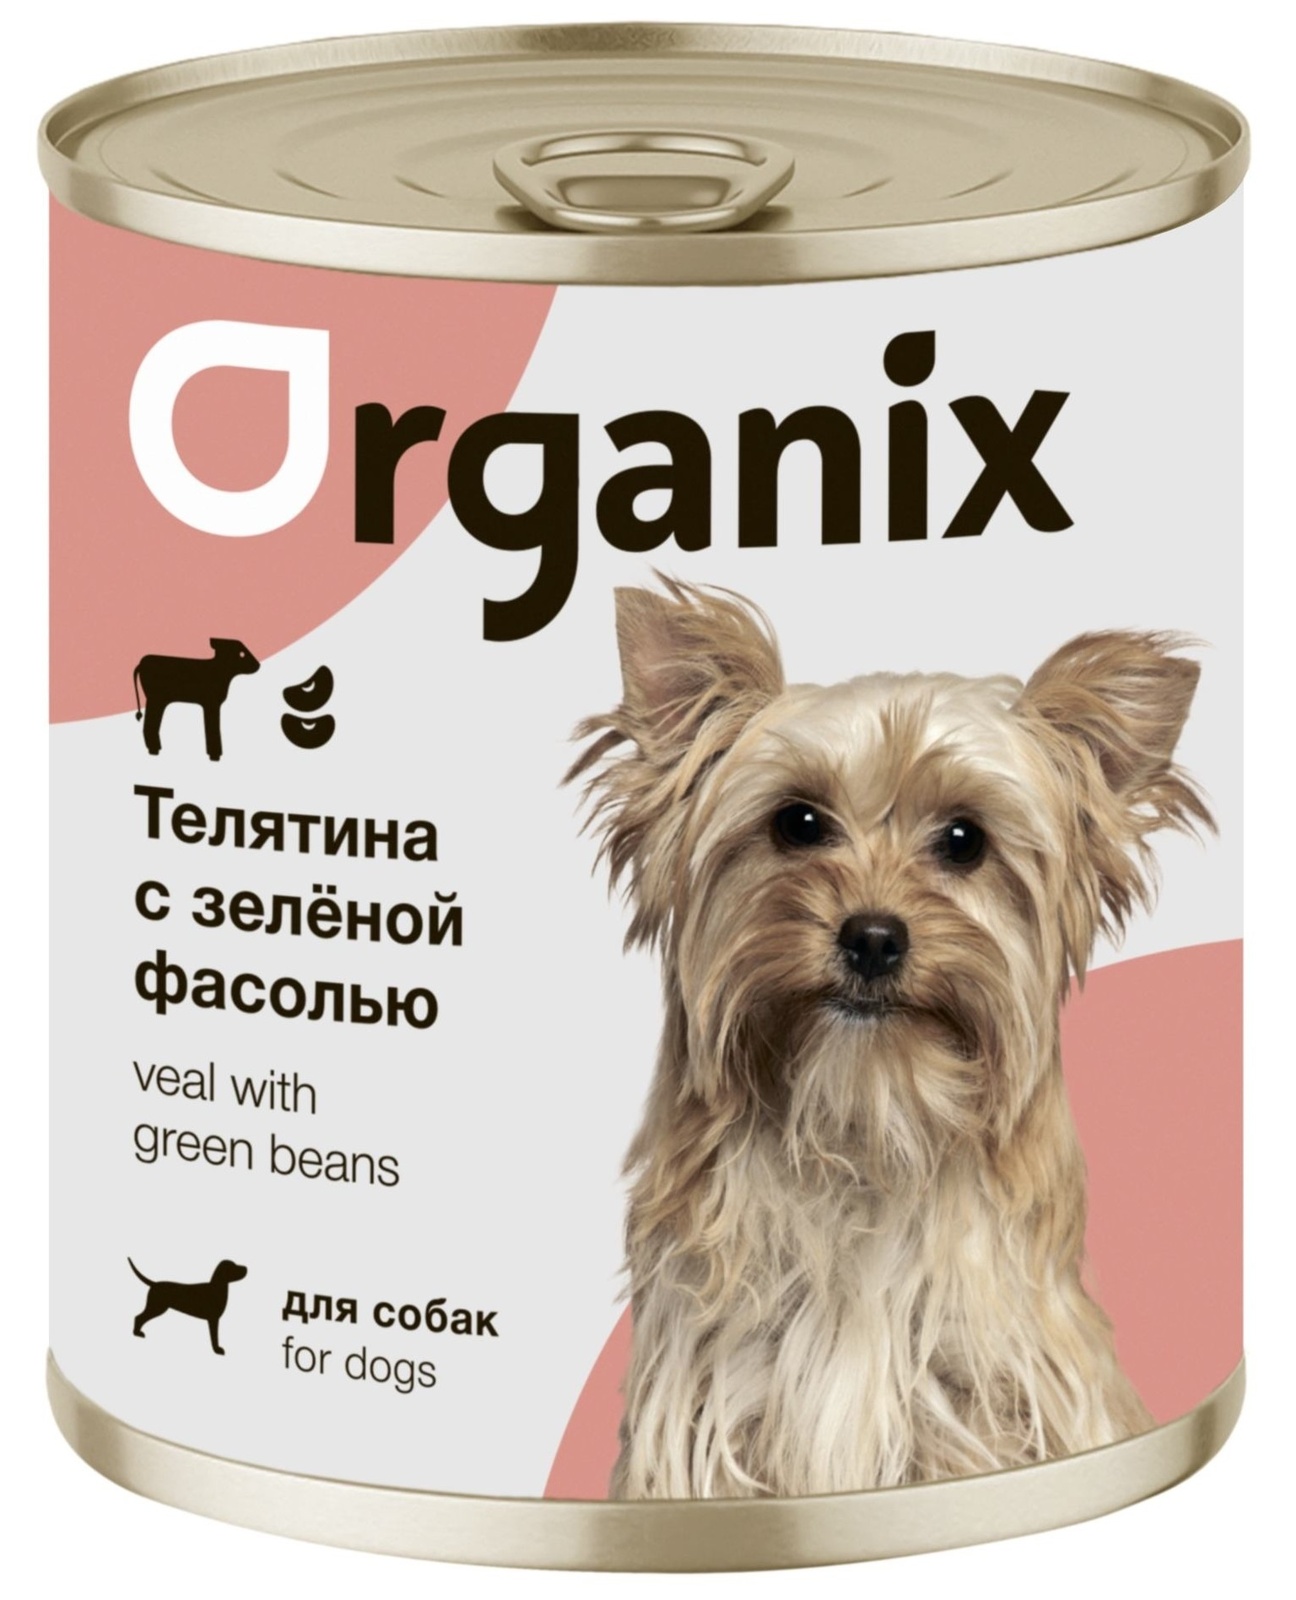 Organix консервы Organix консервы для собак Телятина с зеленой фасолью (400 г)